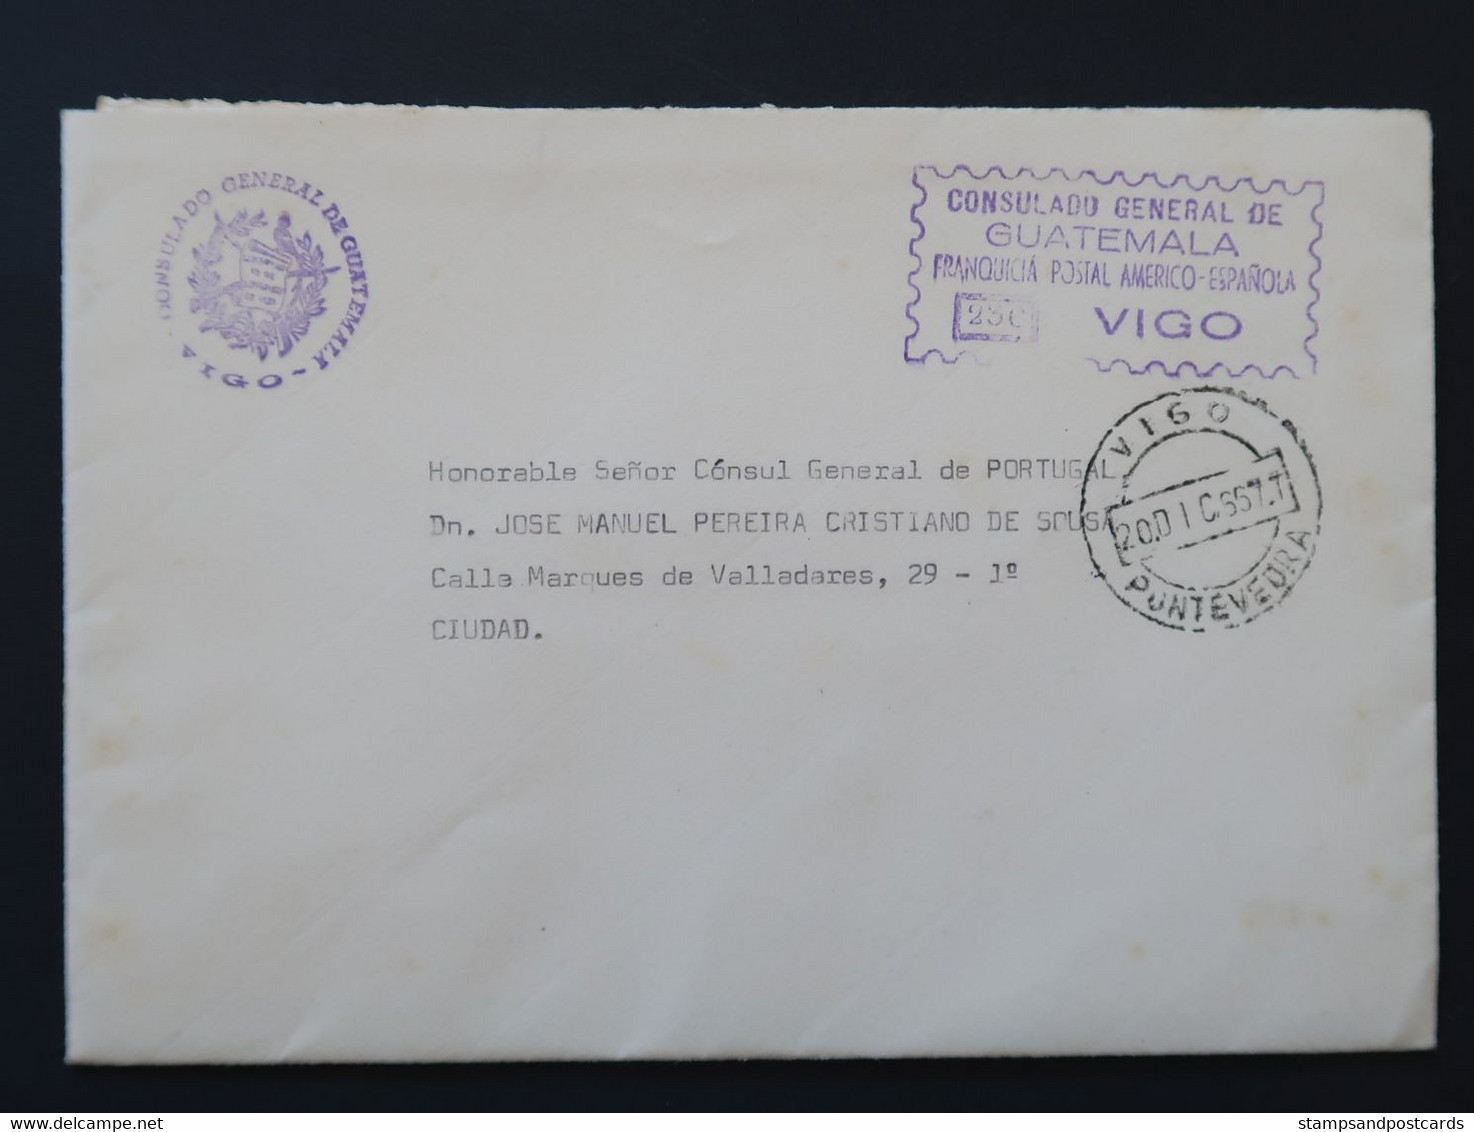 Espagne 1966 Lettre Franchise Postal Vigo Consulat Guatemala España Franquicia Consulado Official Paid Spain - Franchigia Postale